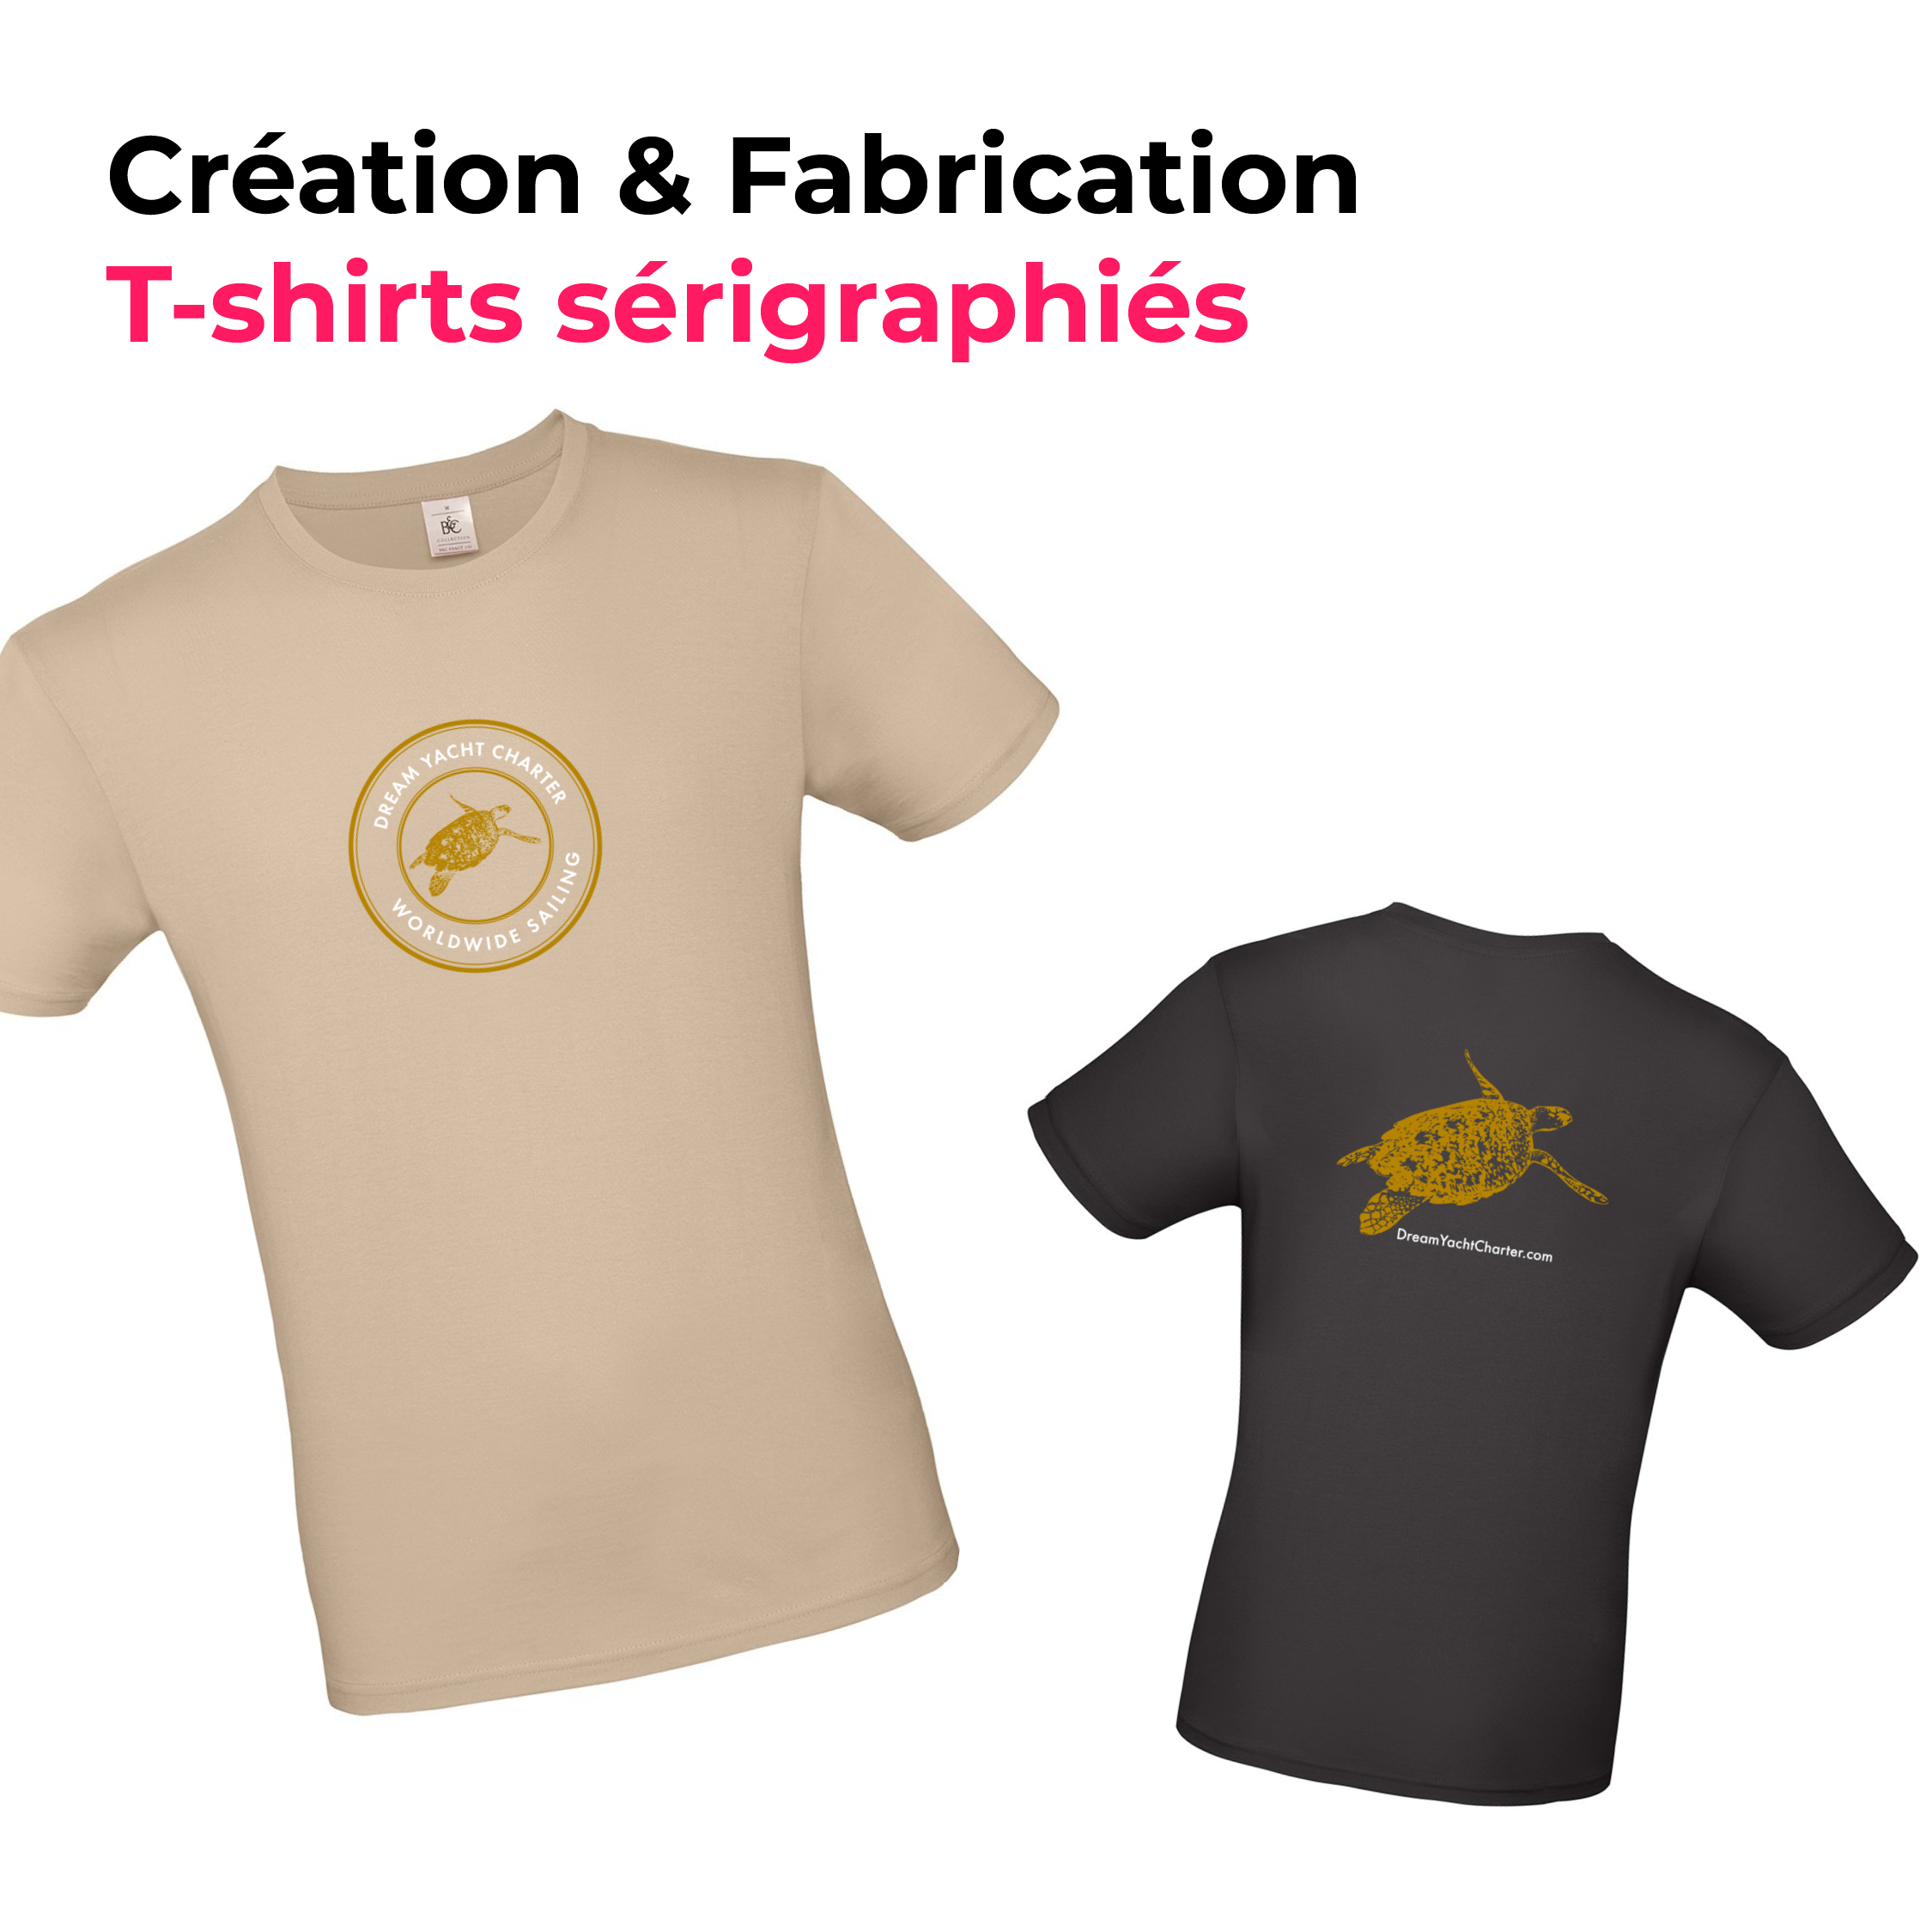 creation et fabrication de t-shirts couleur sable et noir avec le logo dream yacht charter